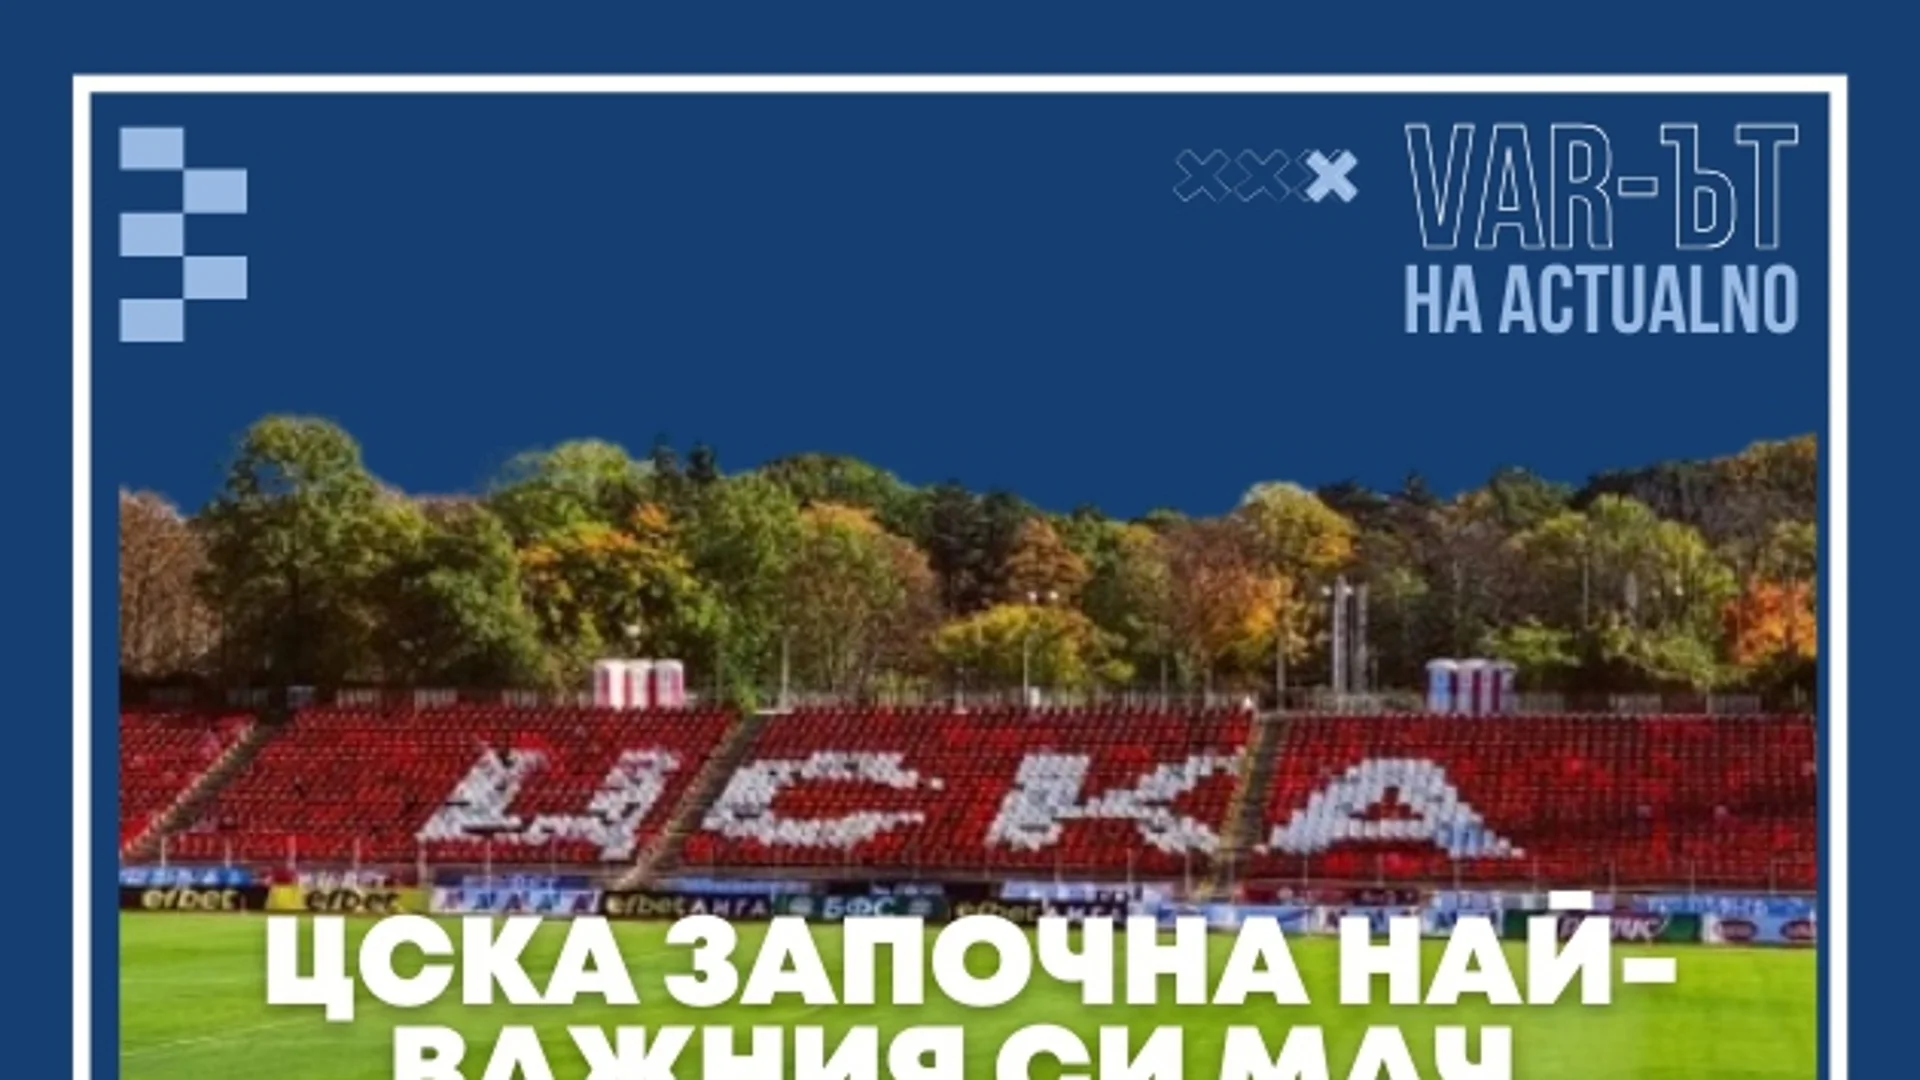 ВАР-ът на Actualno: ЦСКА започна най-важния си мач, ред е на Левски